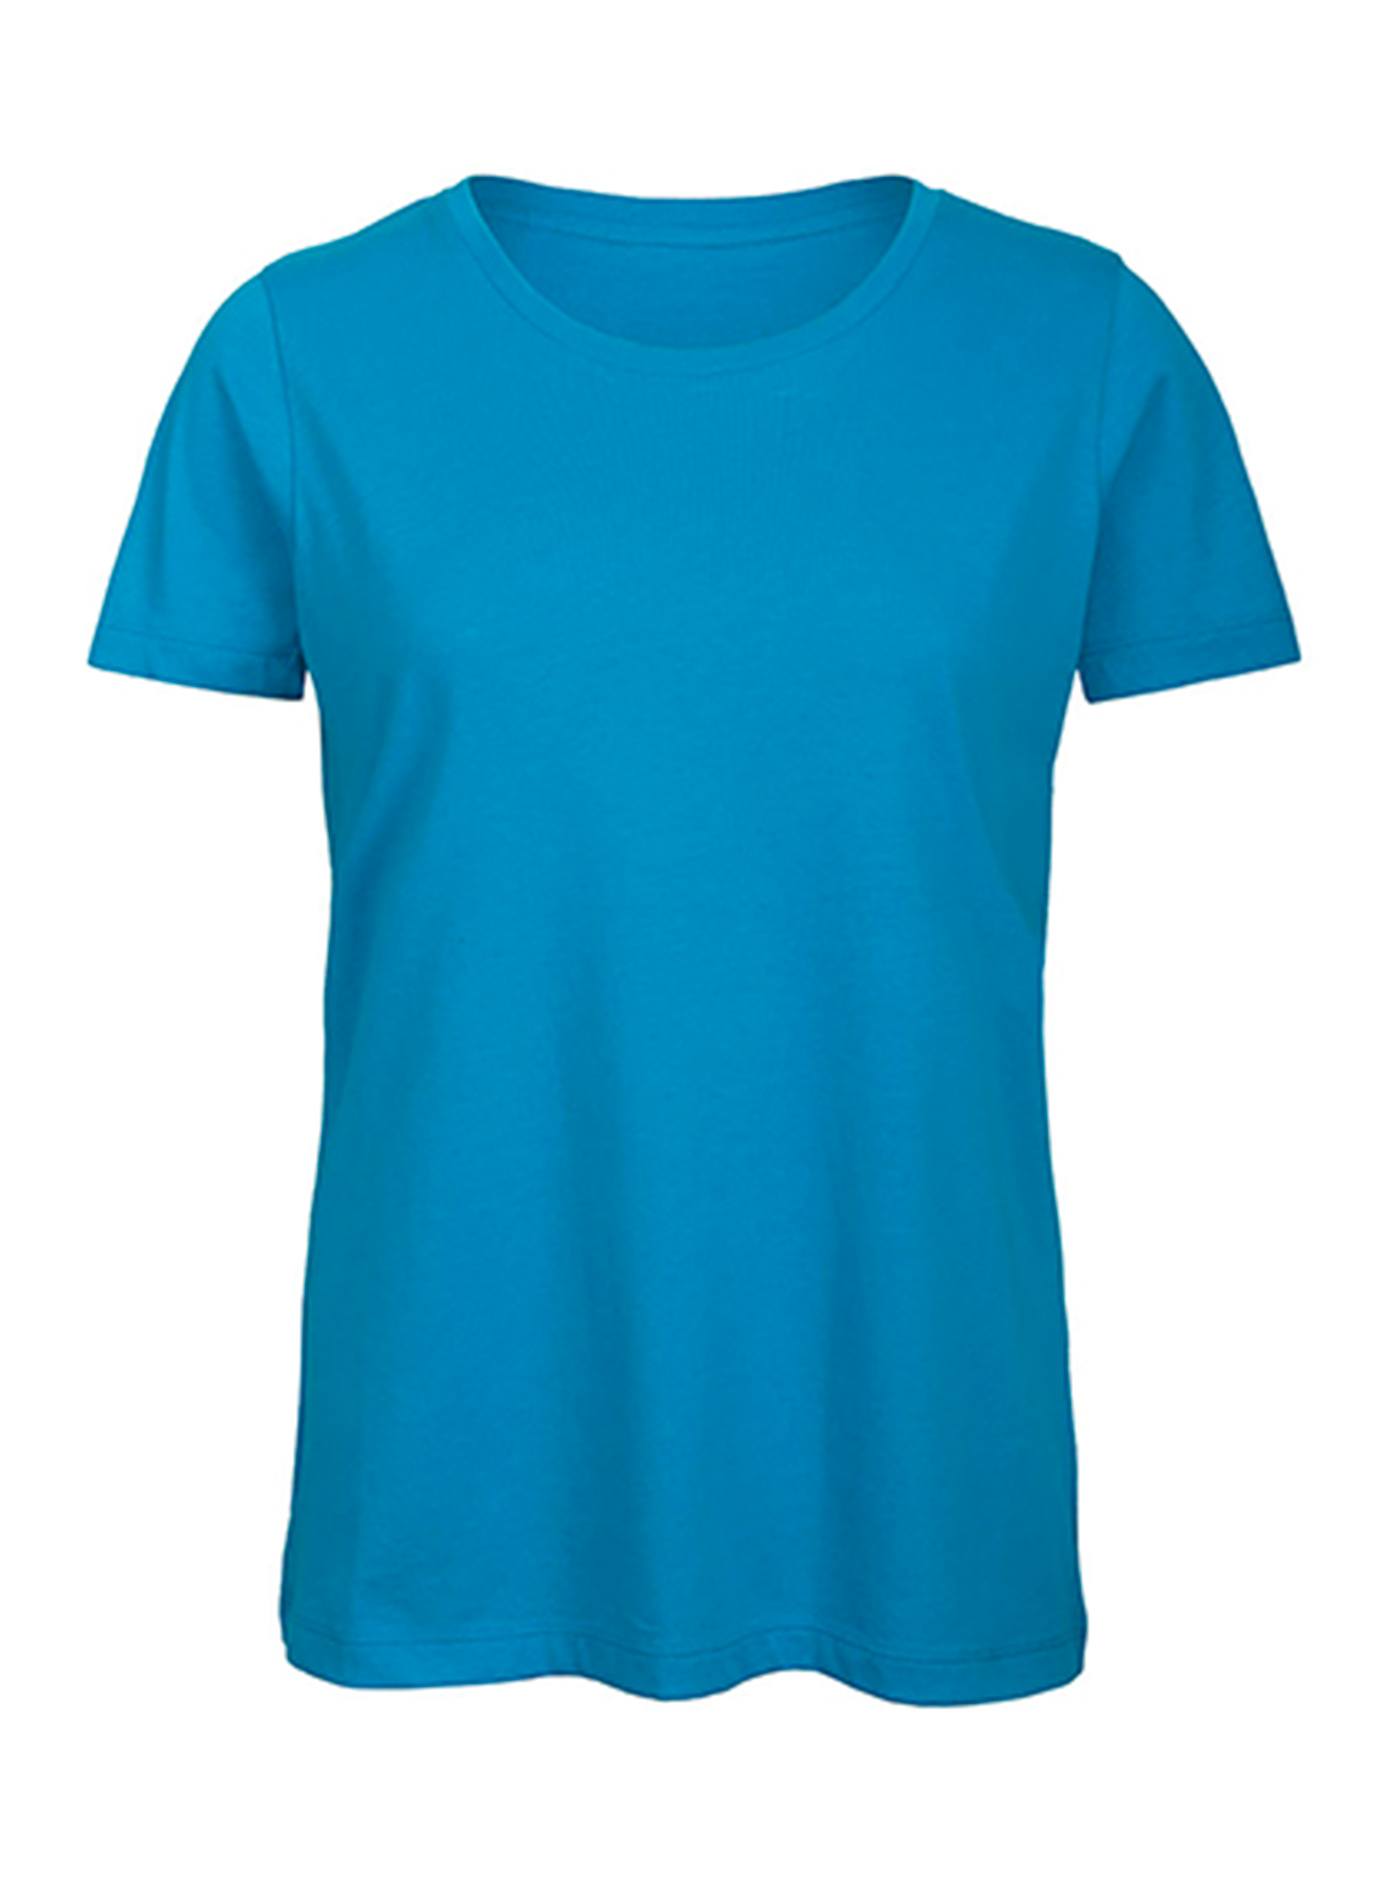 Dámské tričko Inspire - Blankytně modrá M